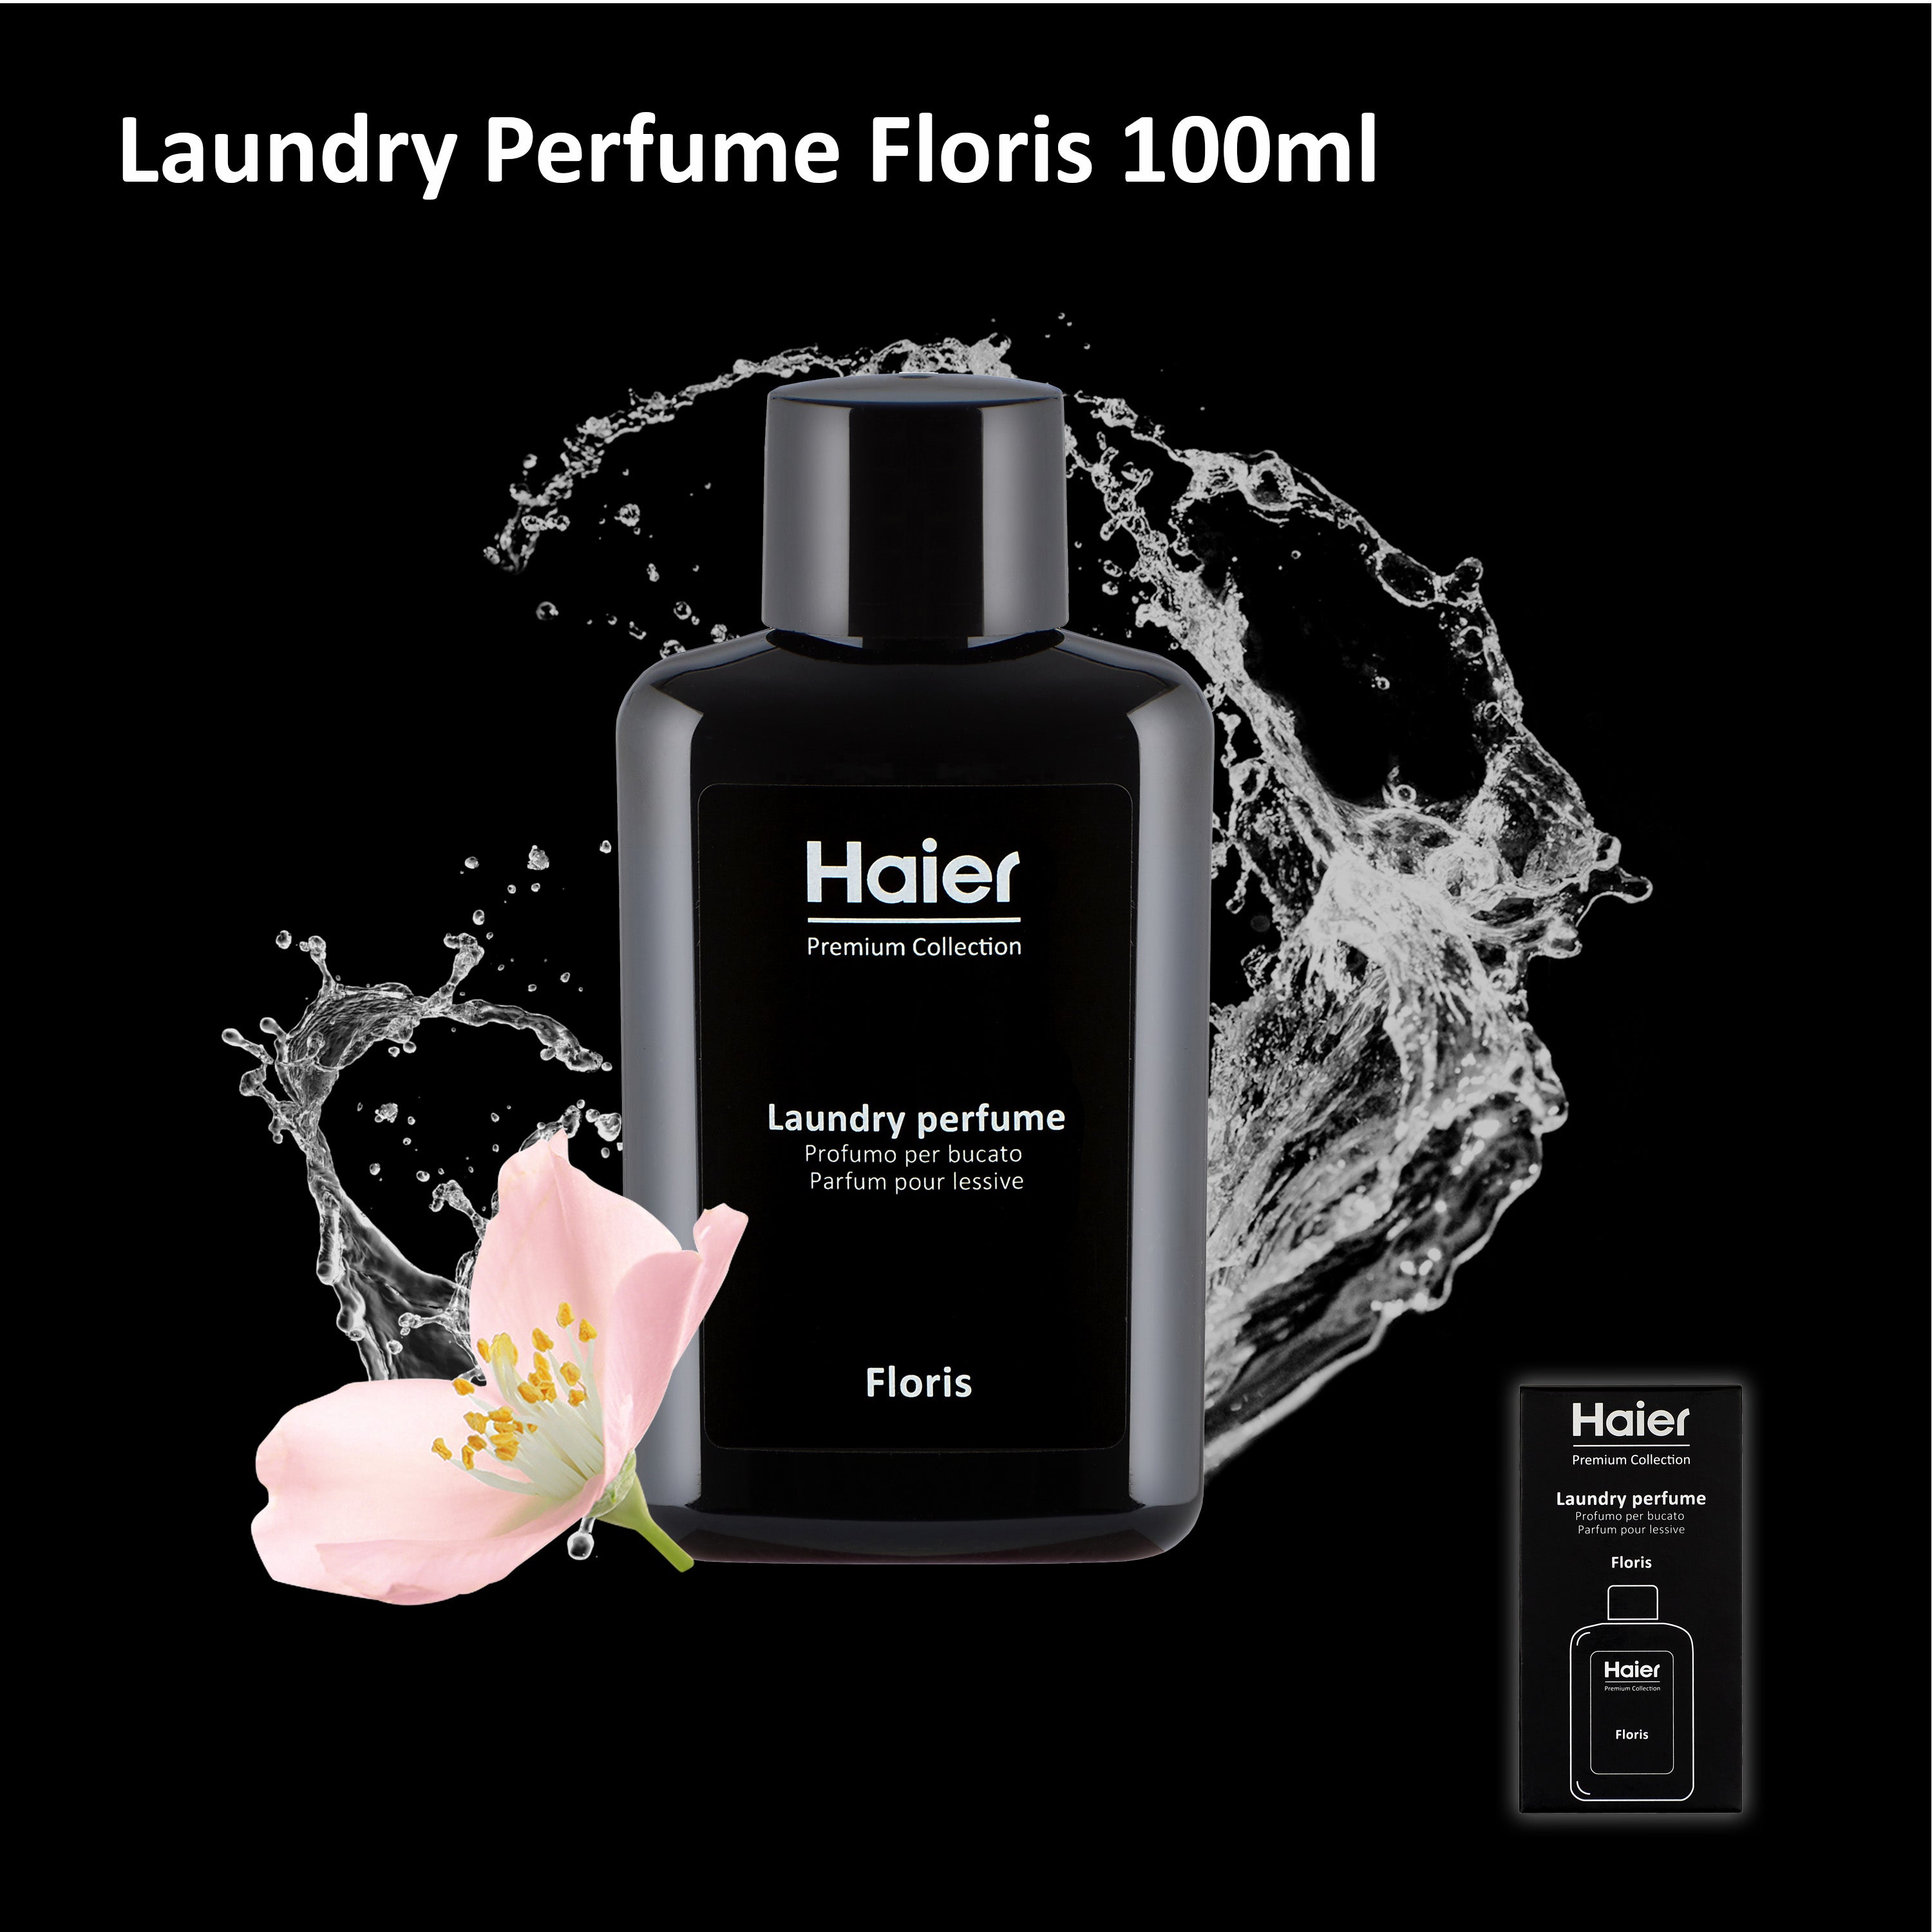 Haier Laundry Perfume Bundle